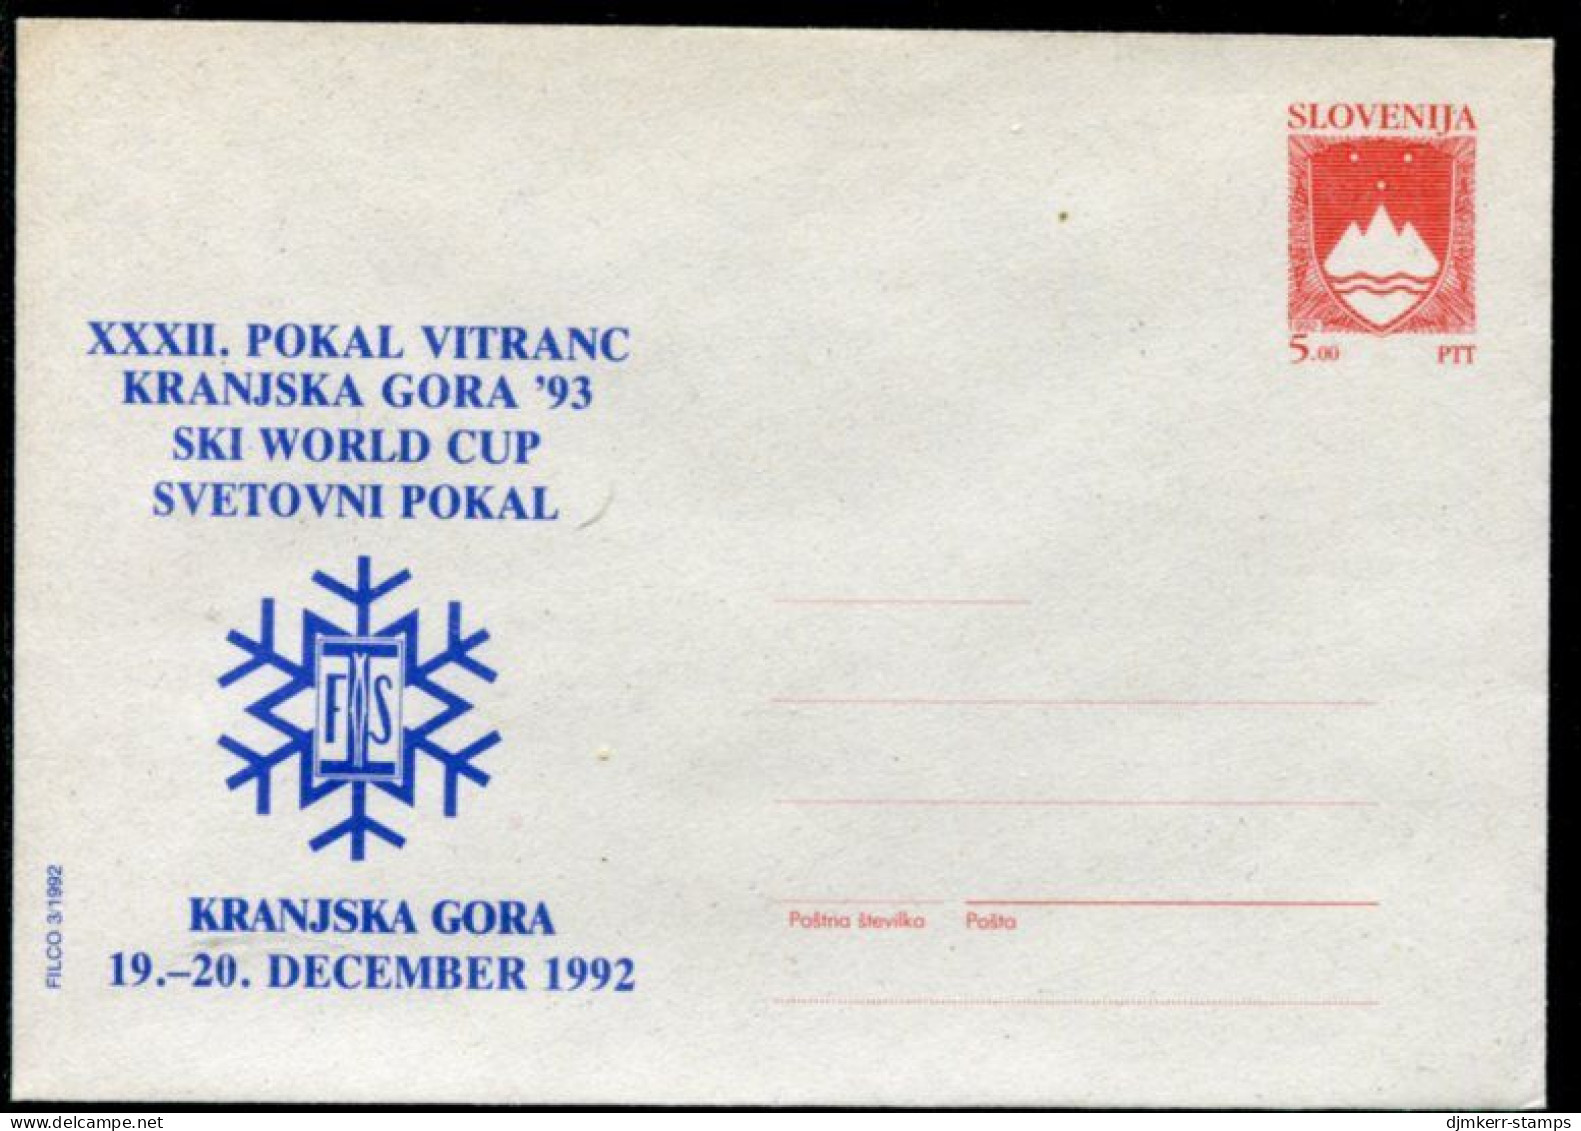 SLOVENIA 1992 5.00 T.  Arms Publicity Postal Stationery Envelope, Unused.  As Michel U1b - Slovénie